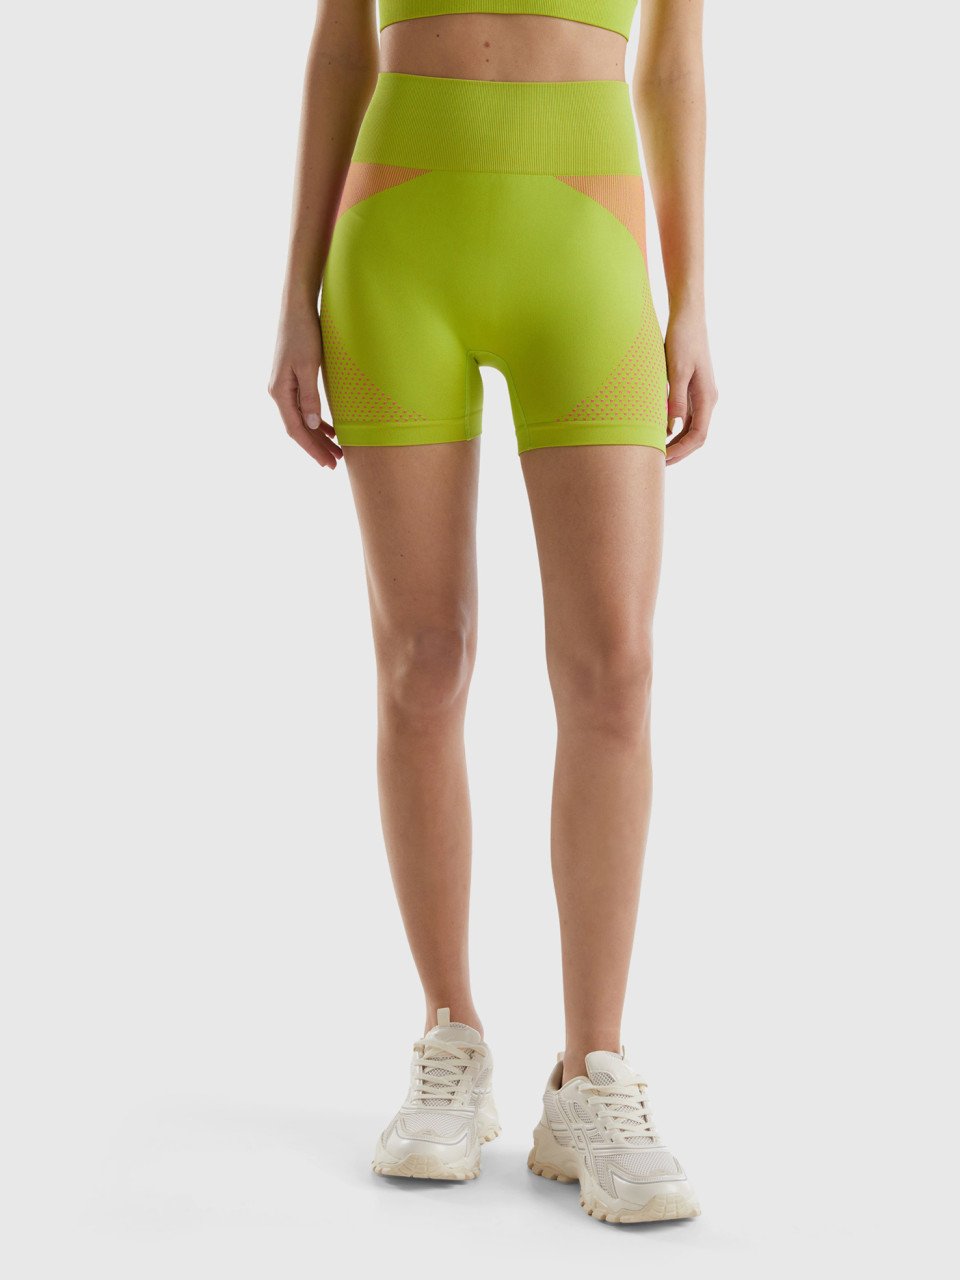 Benetton, Nahtlose Sport-shorts, Gelbgrün, female